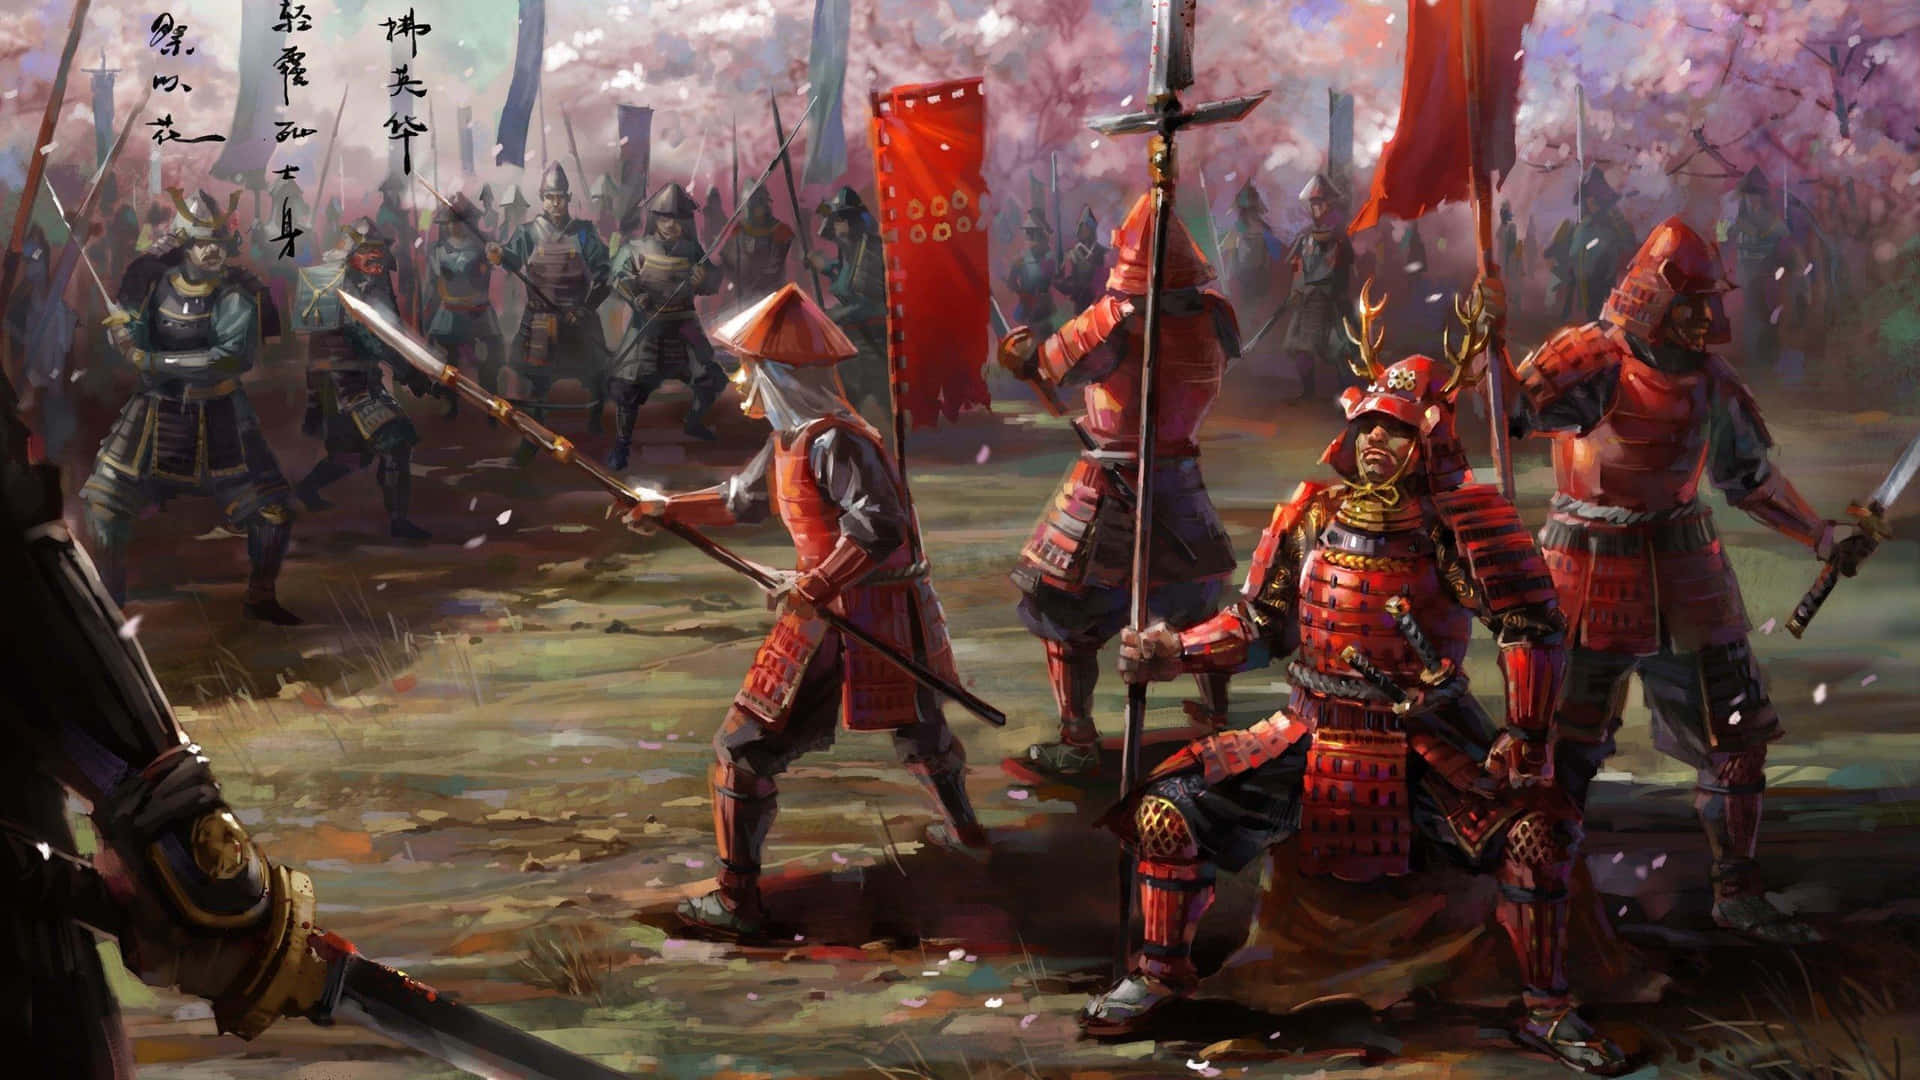 Fierce Samurai Battle in a Mystic Battlefield Wallpaper